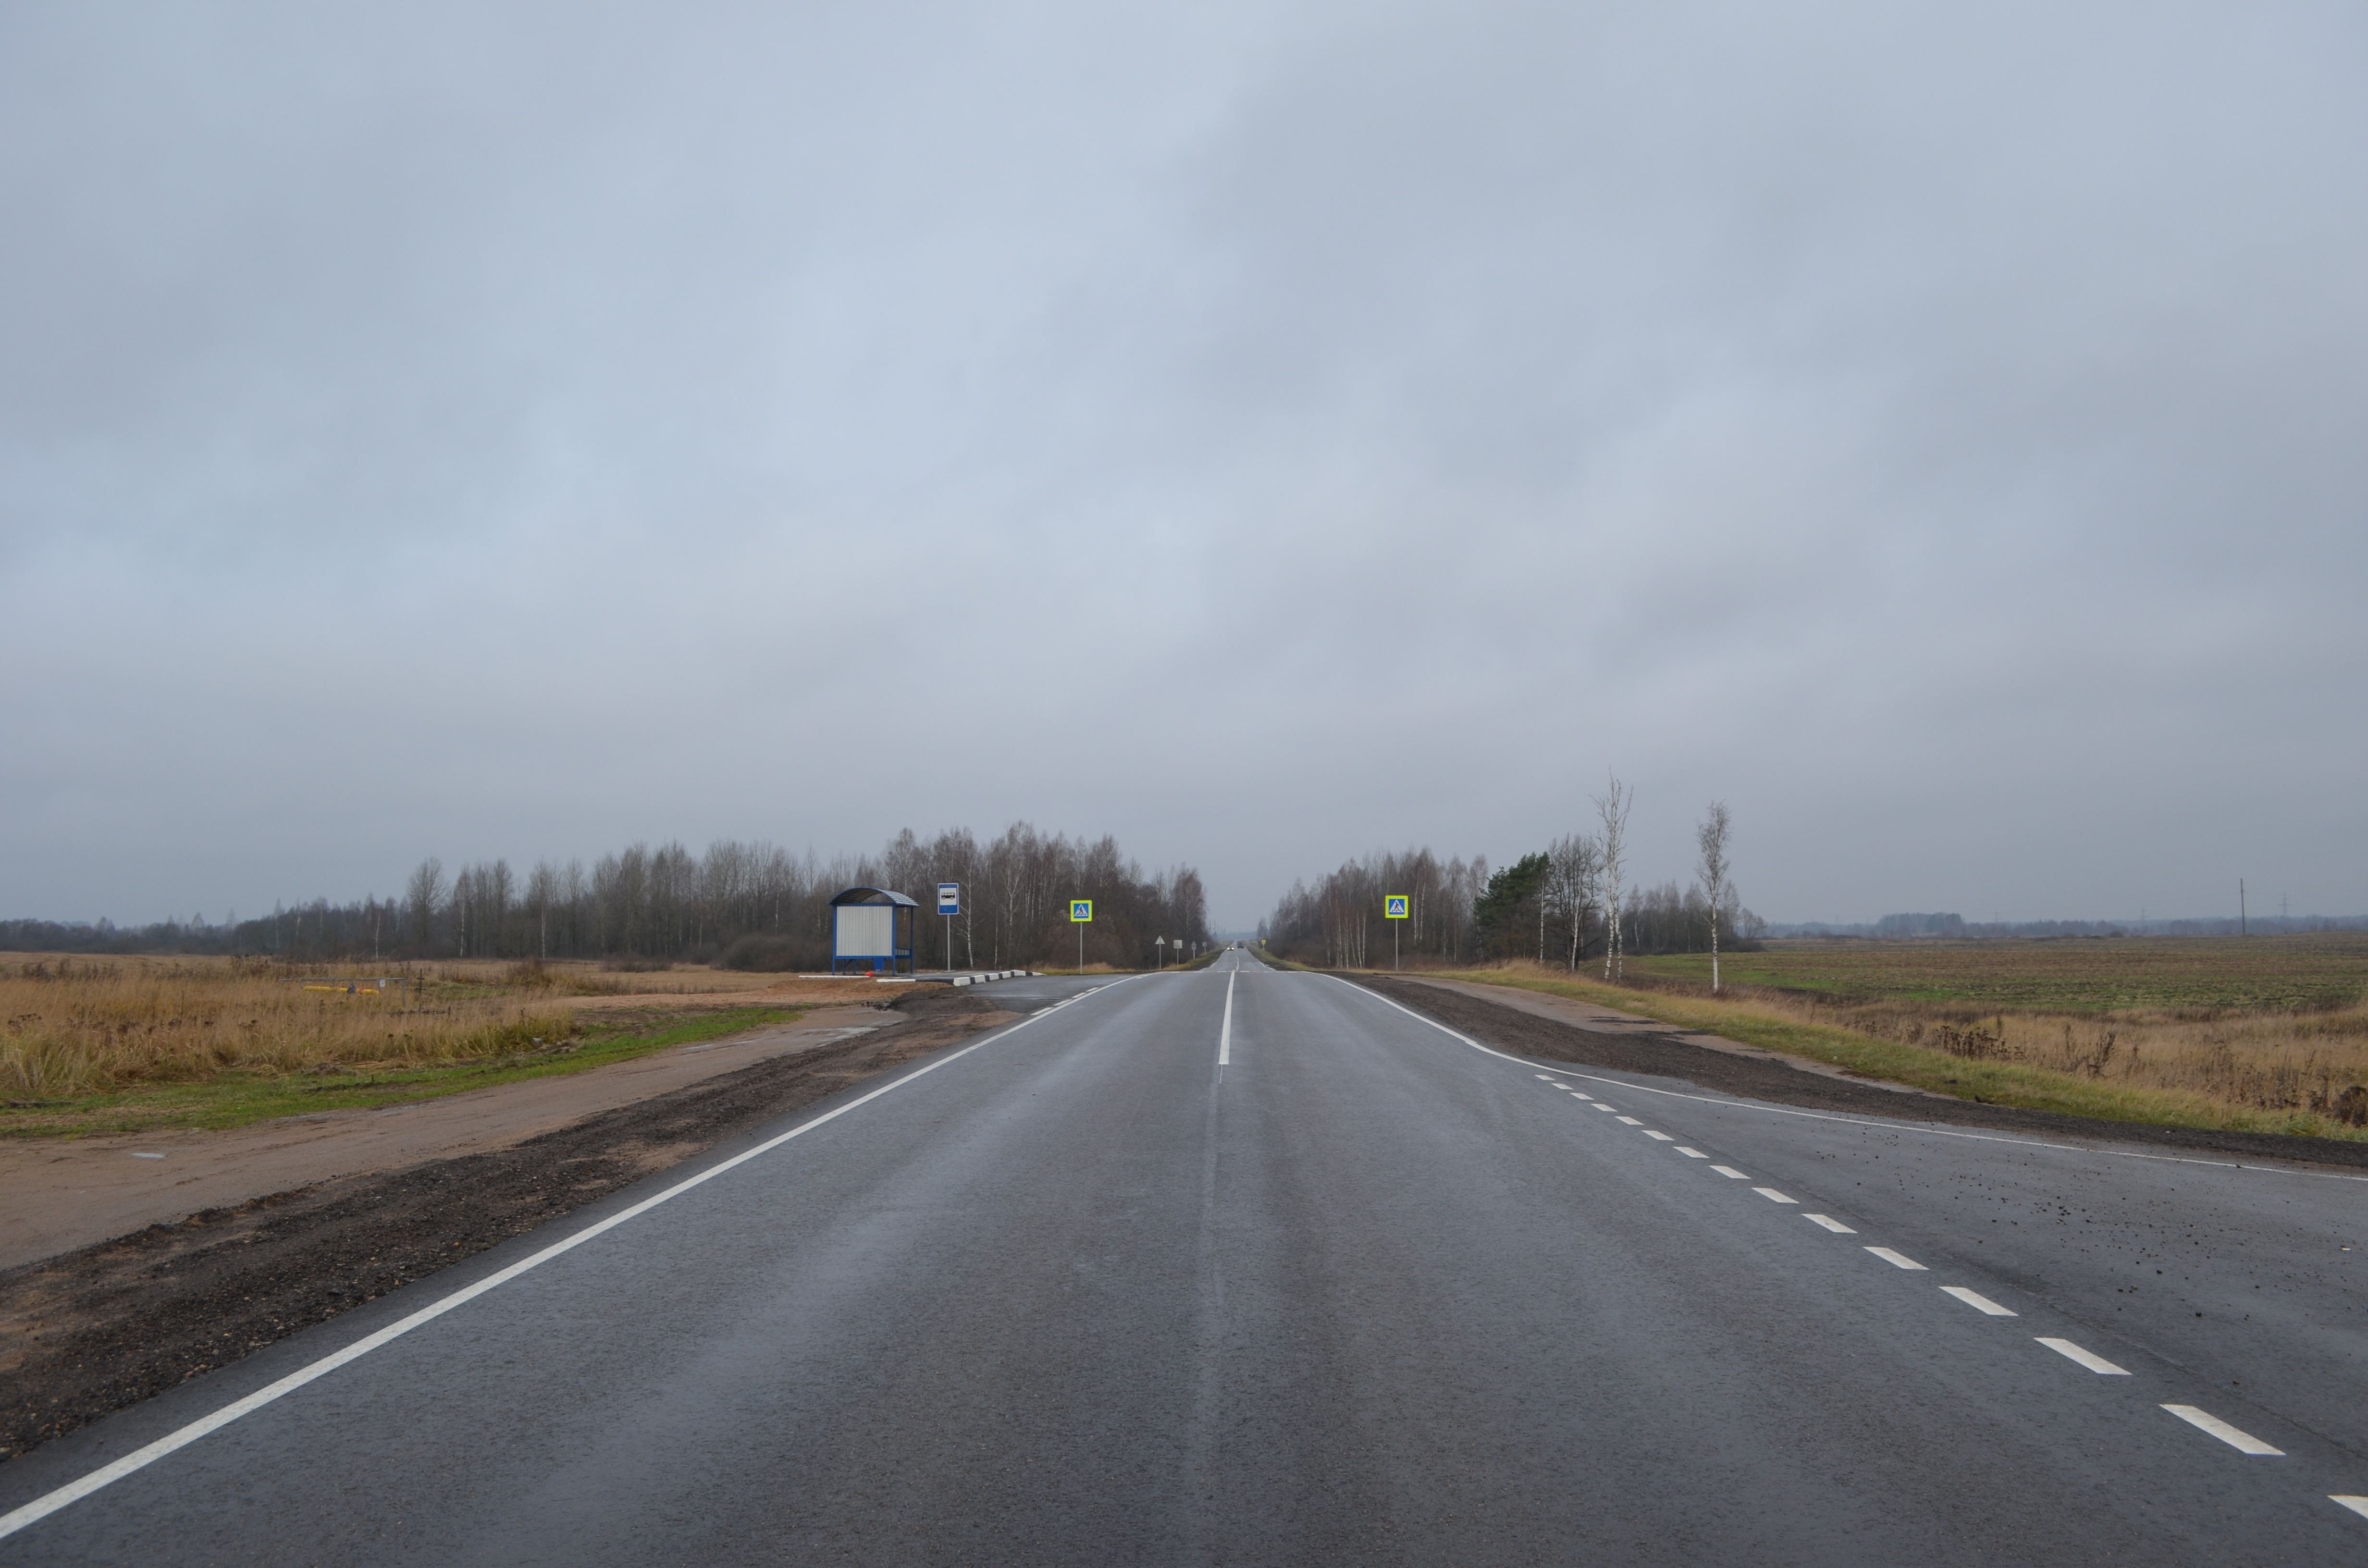 На Смоленщине отремонтировали почти 30 километров автодороги Ольша-Велиж-Усвяты-Невель